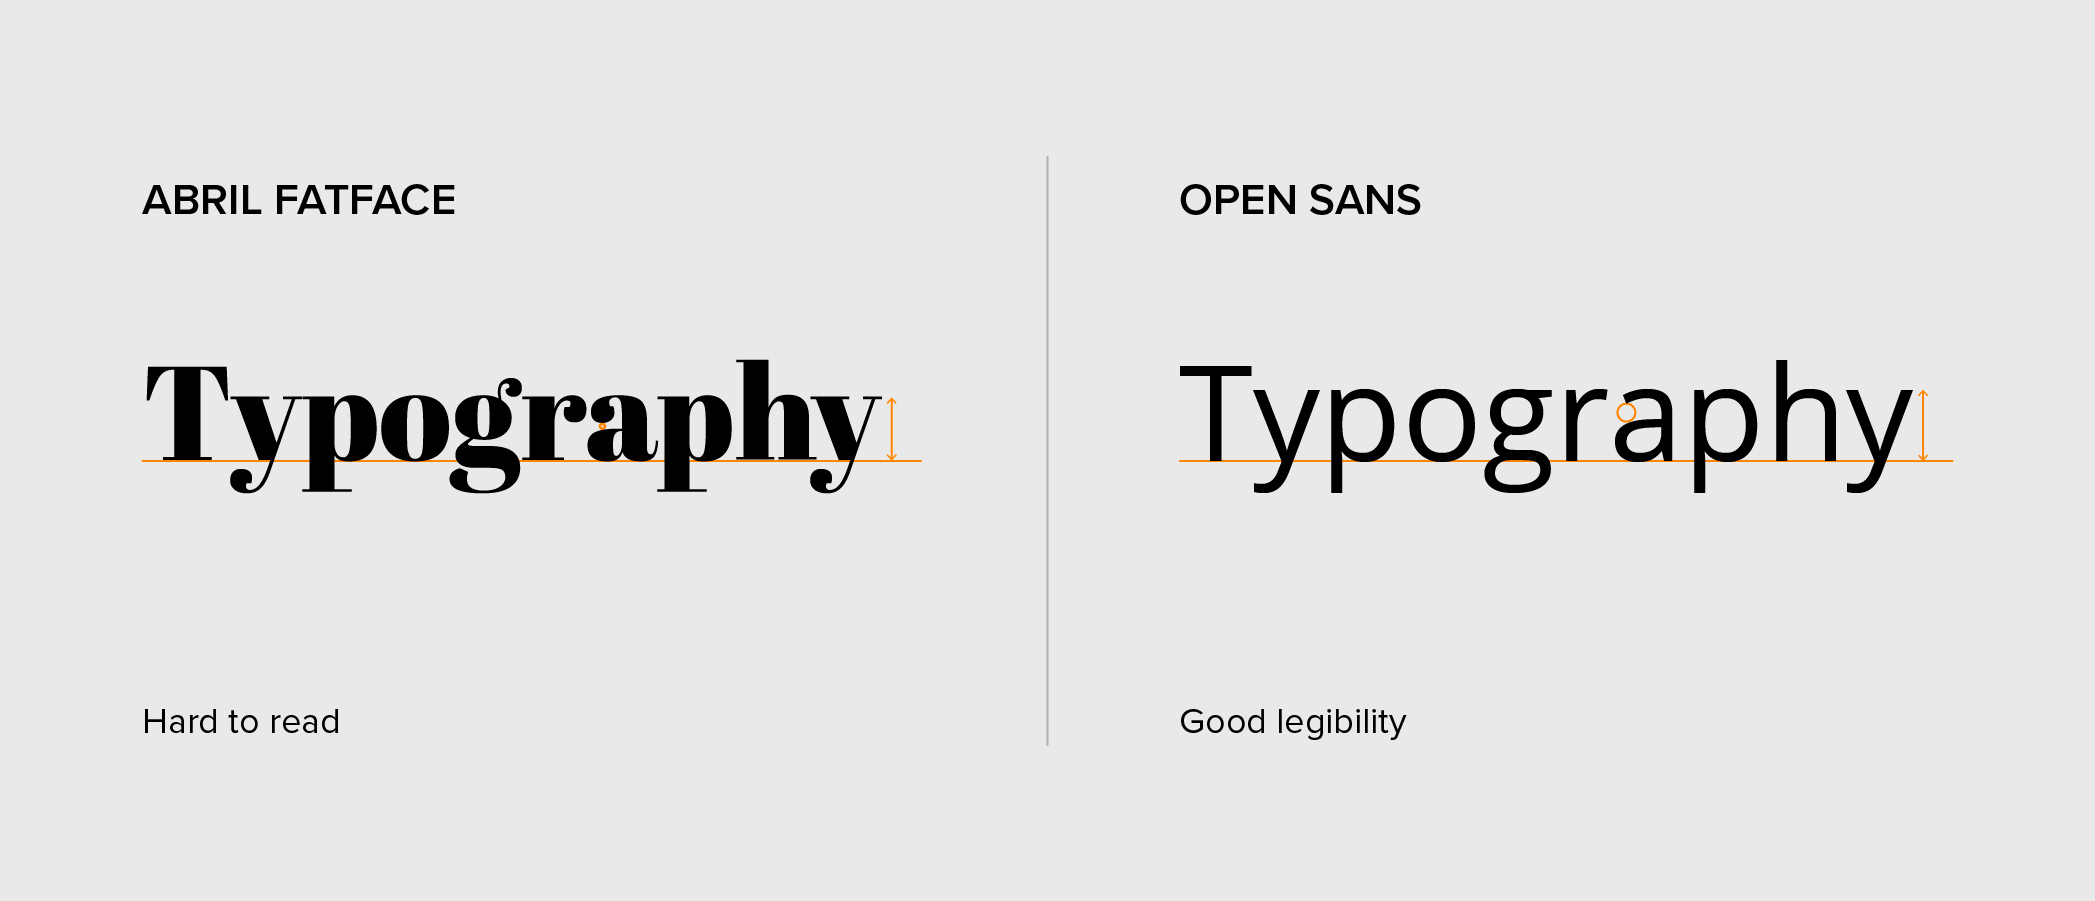 Comparison between Abril Fatface and Open Sans legibility.